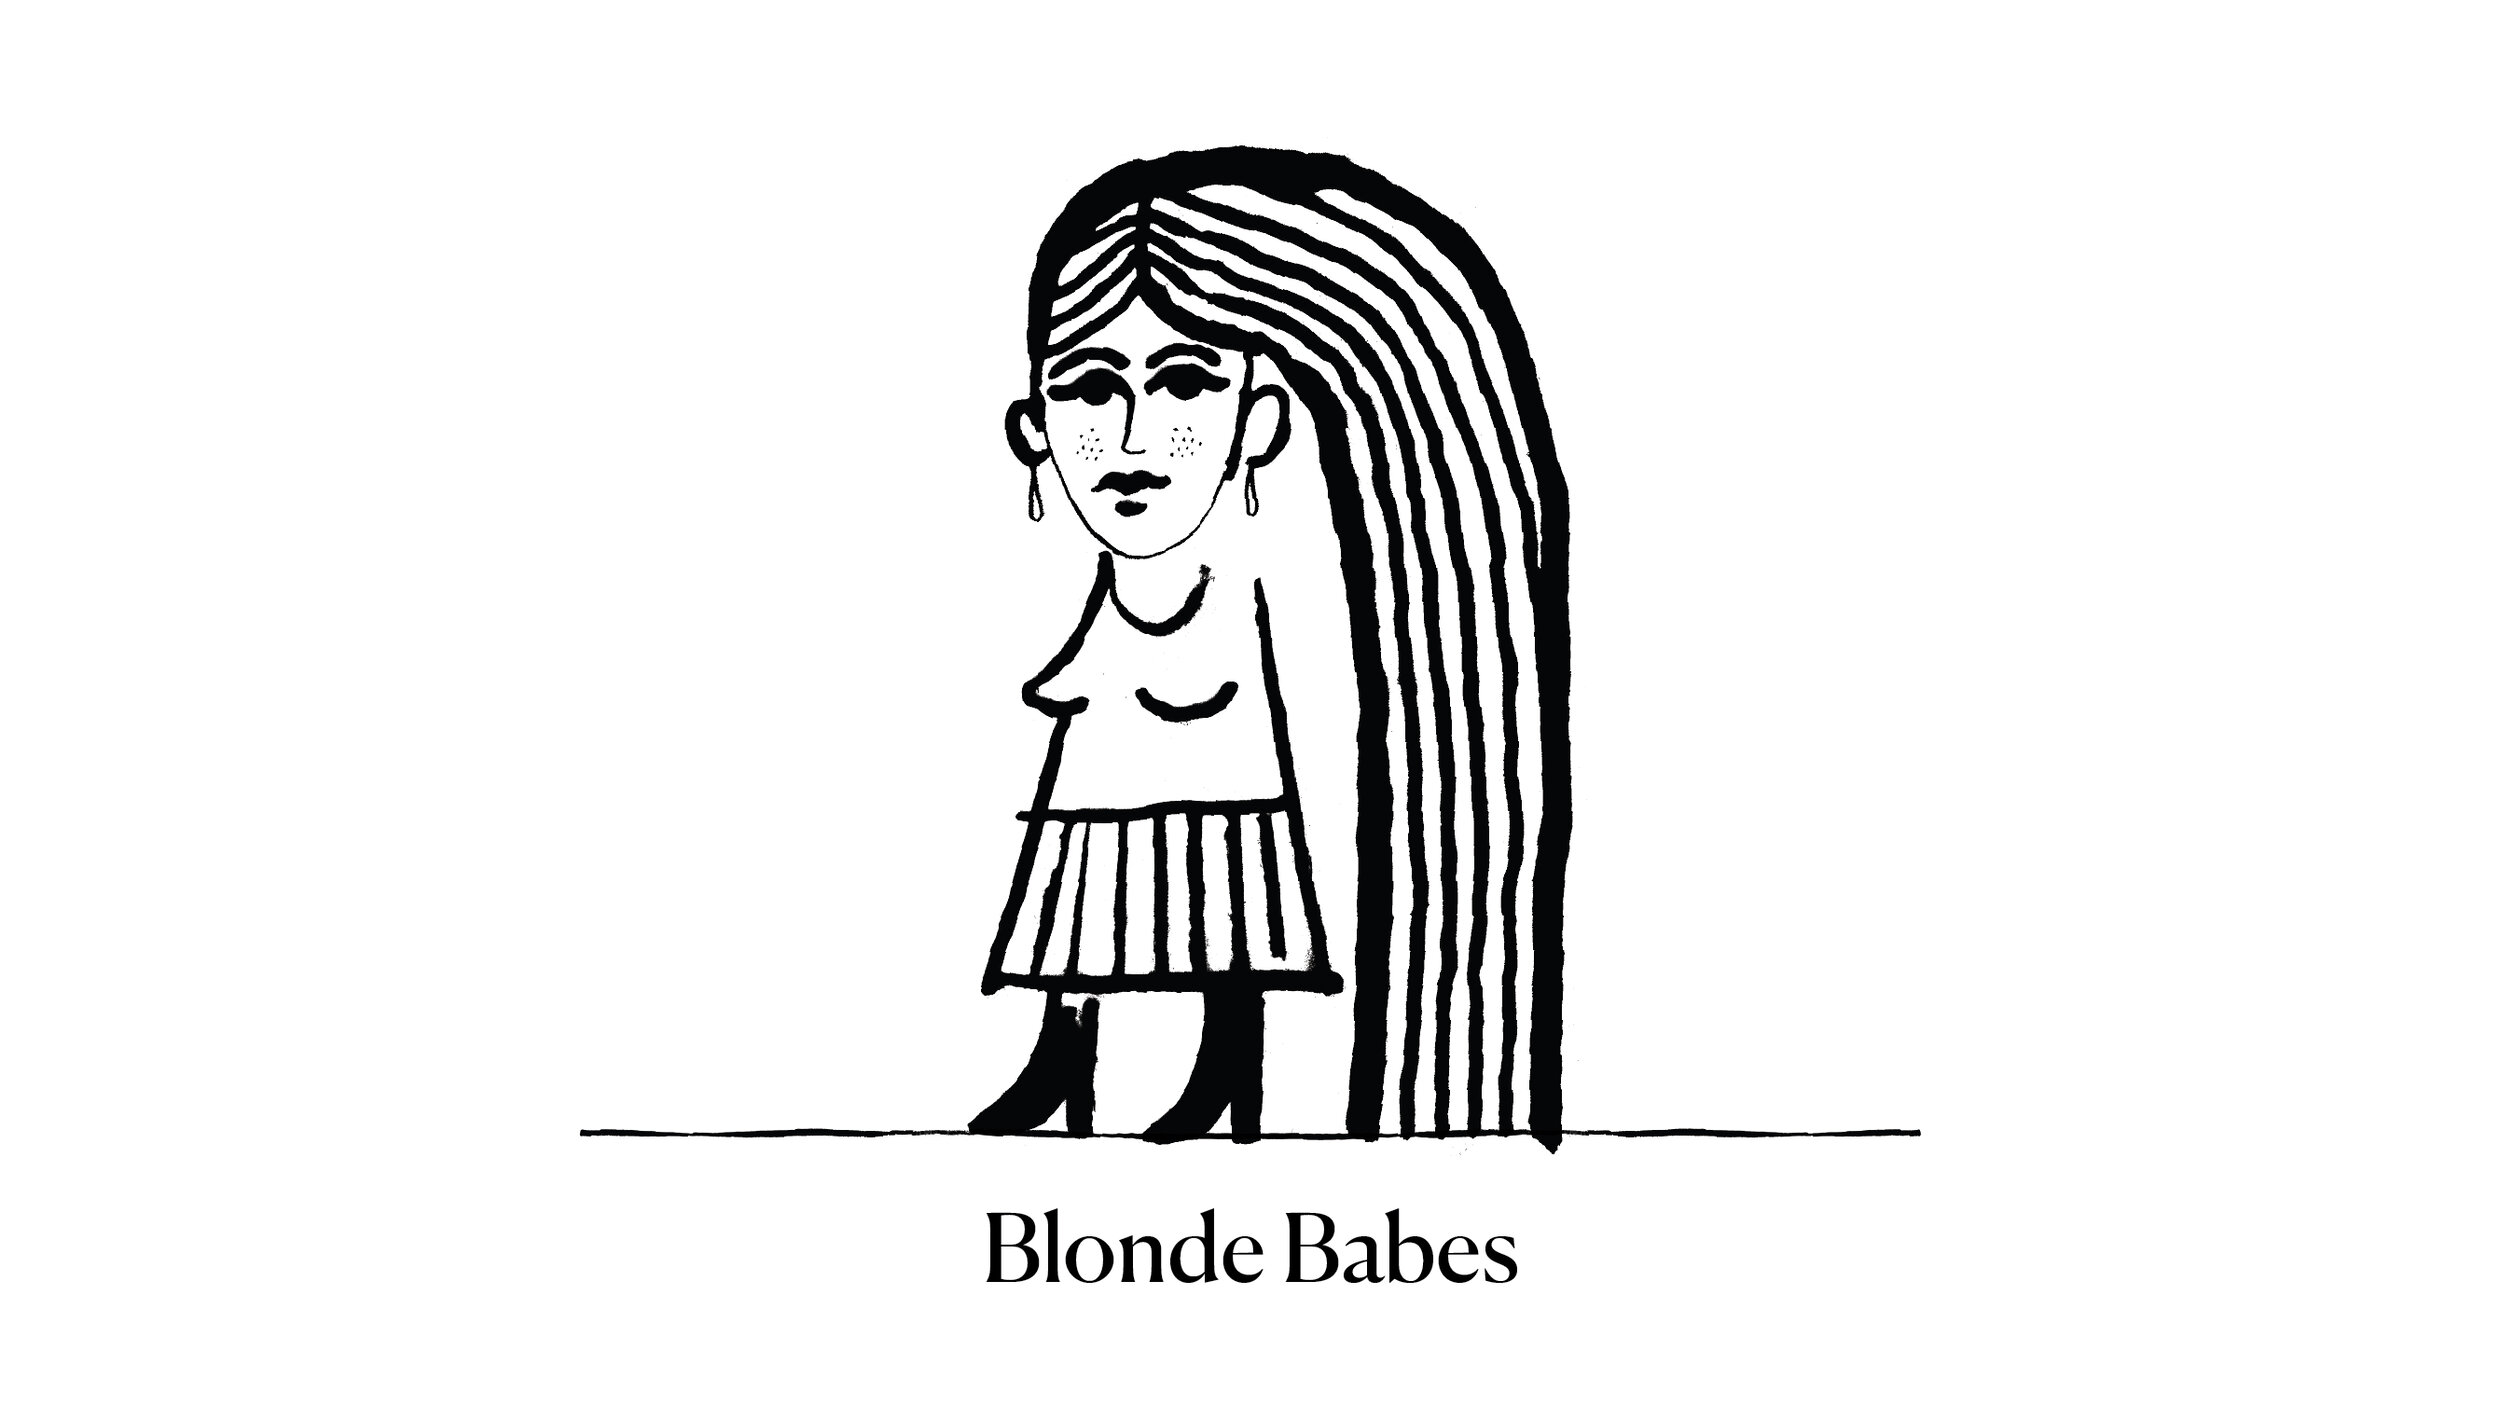 3. "Blonde Hair Grants" - wide 8